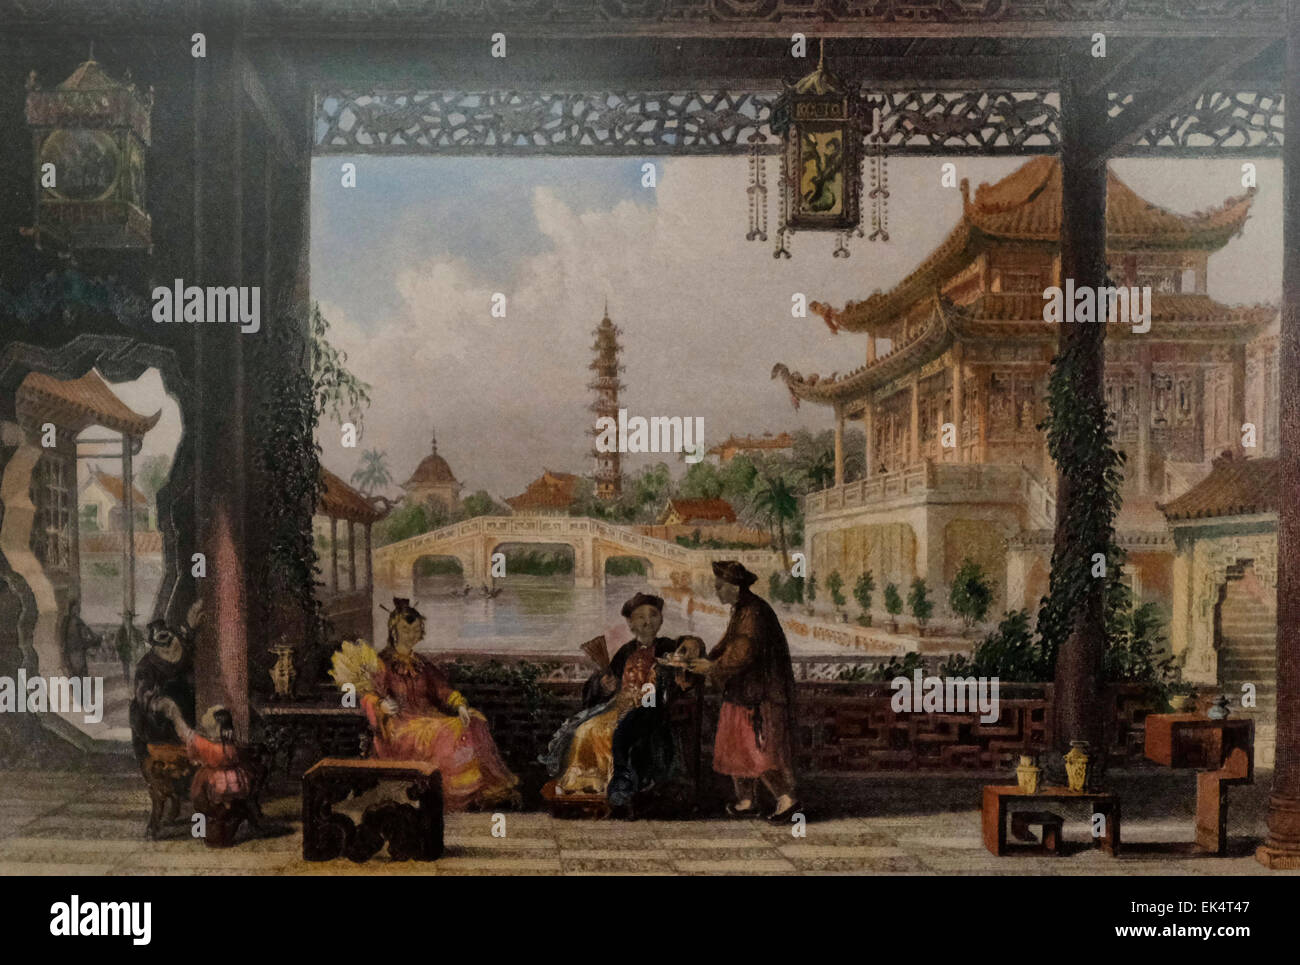 Pavillon et jardin d'un mandarin près de Pékin - Chine xixe siècle Banque D'Images